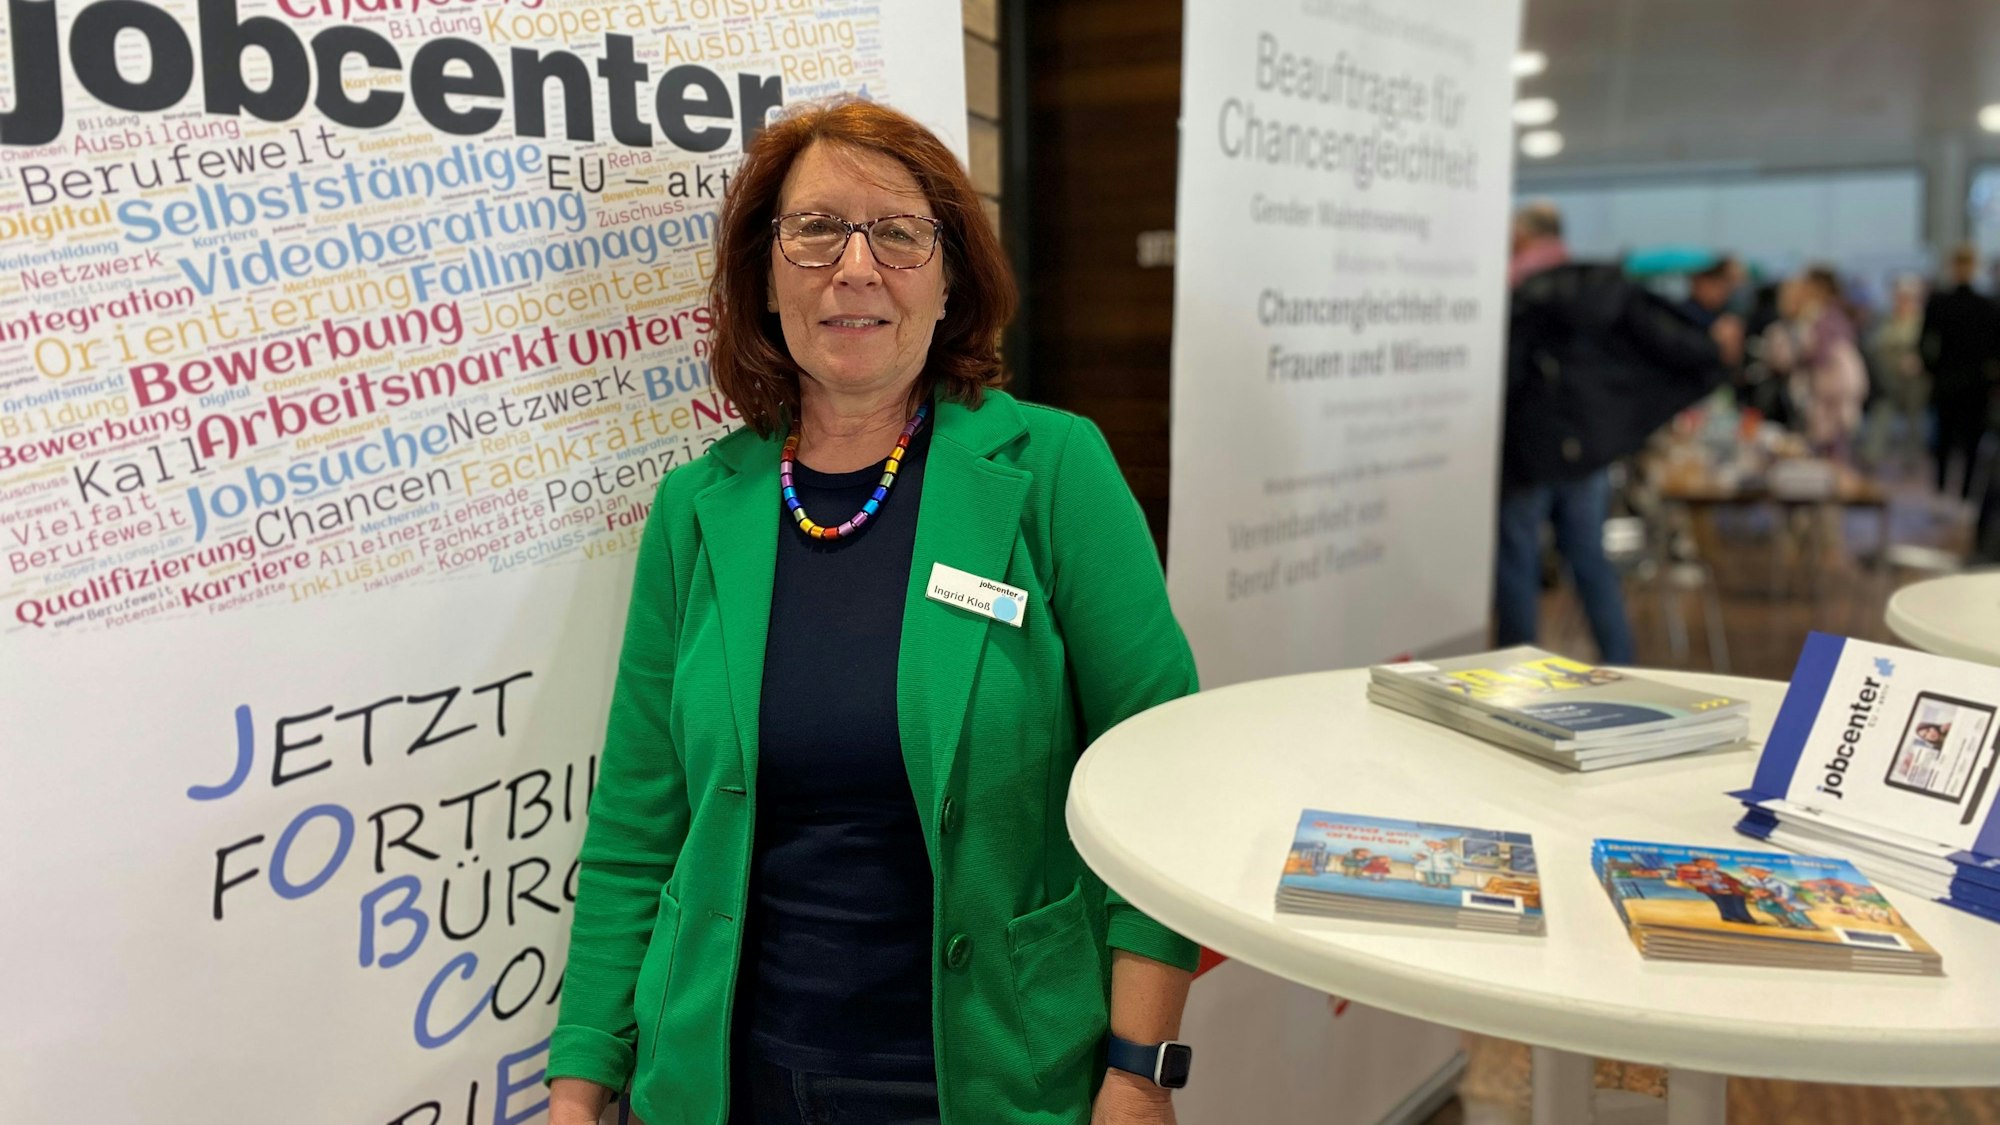 Ingrid Kloß, Beauftragte für Chancengleichheit im Jobcenter Euskirchen steht an ihrem Stand zwischen zwei Plakaten